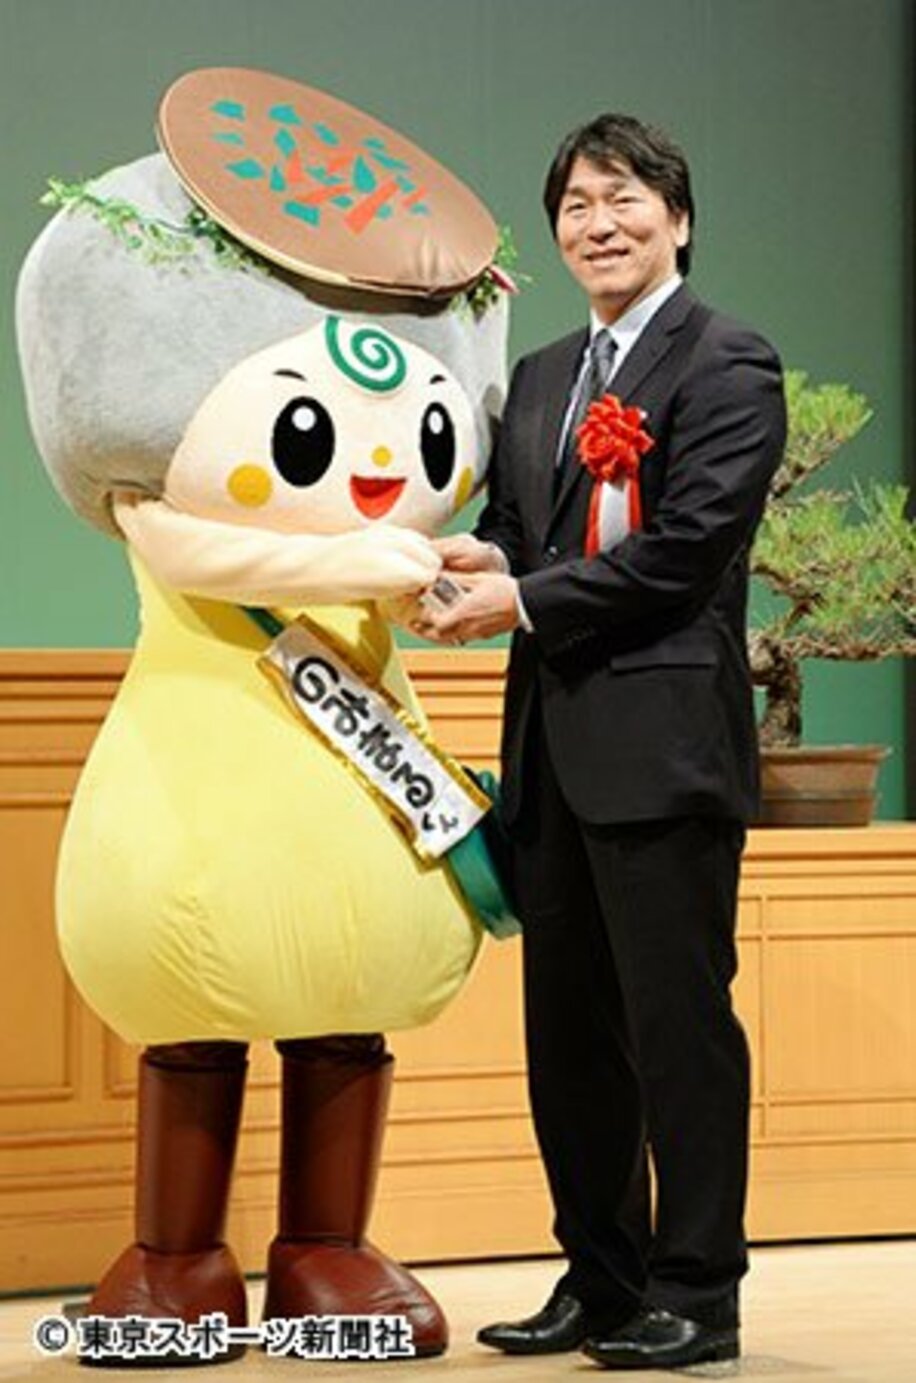 能美市のマスコット「のみまるくん」と握手する松井氏